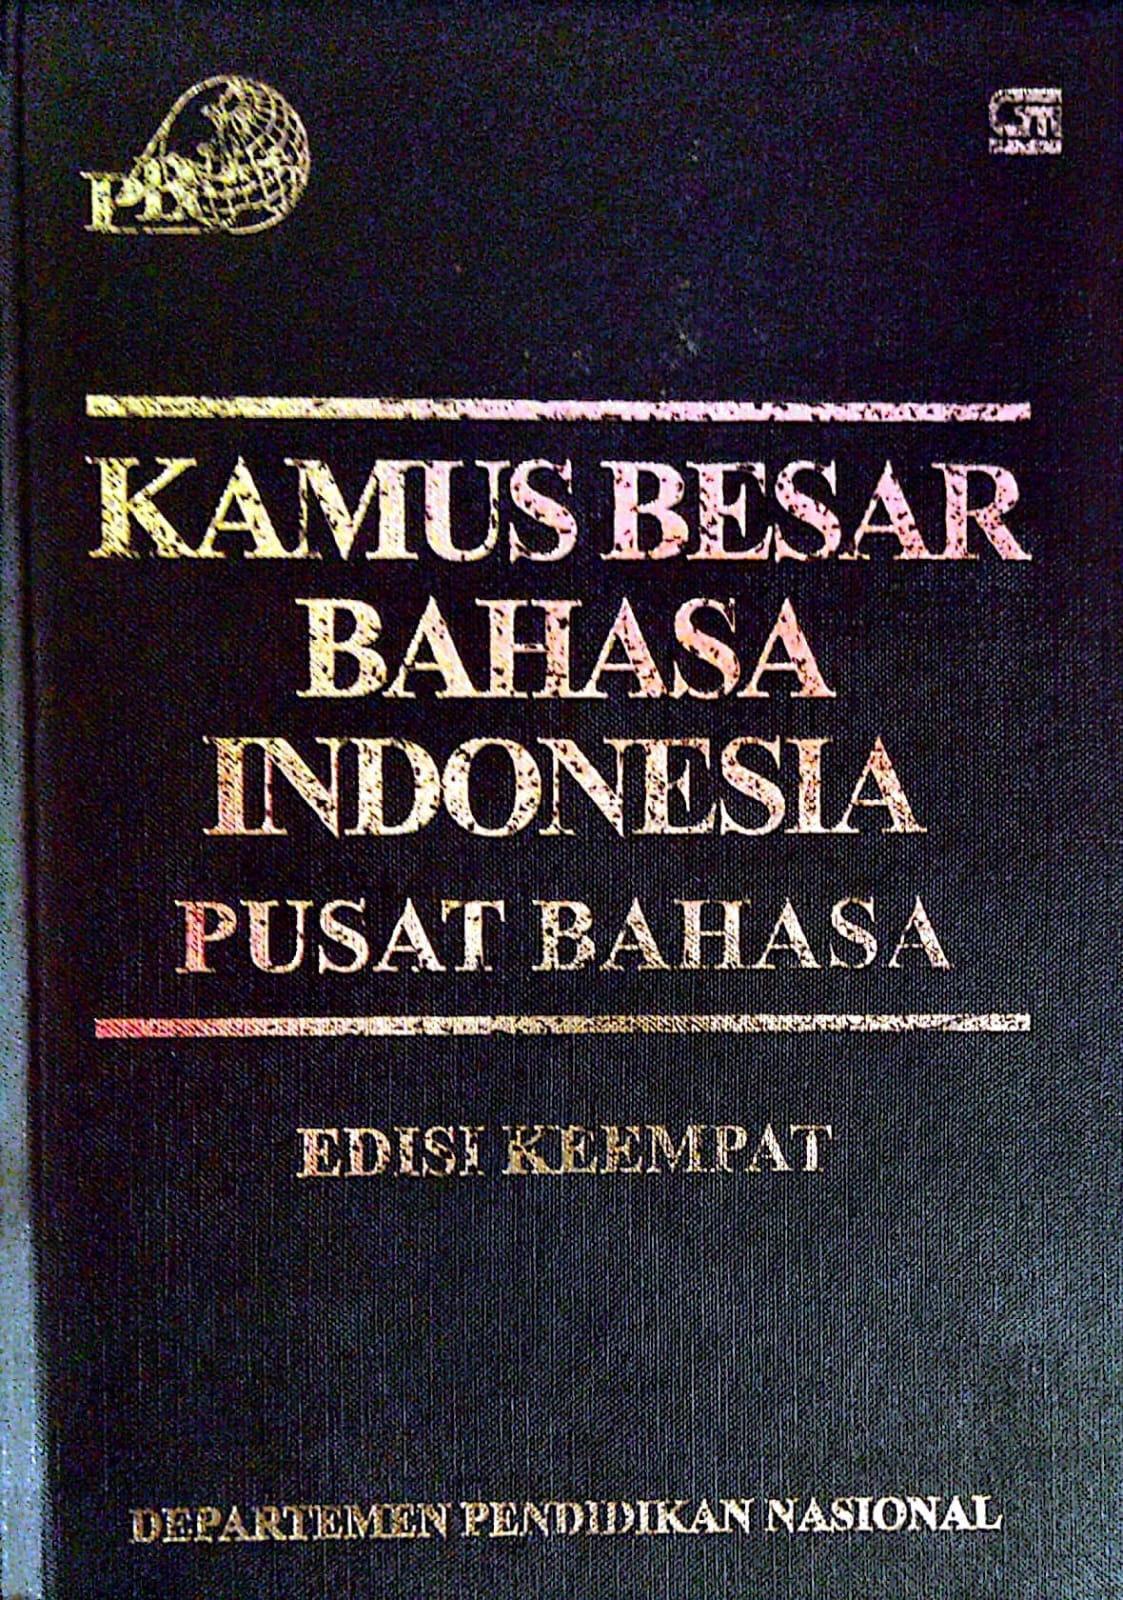 Kamus Besar Bahasa Indonesia Pusat Bahasa : Edisi Keempat